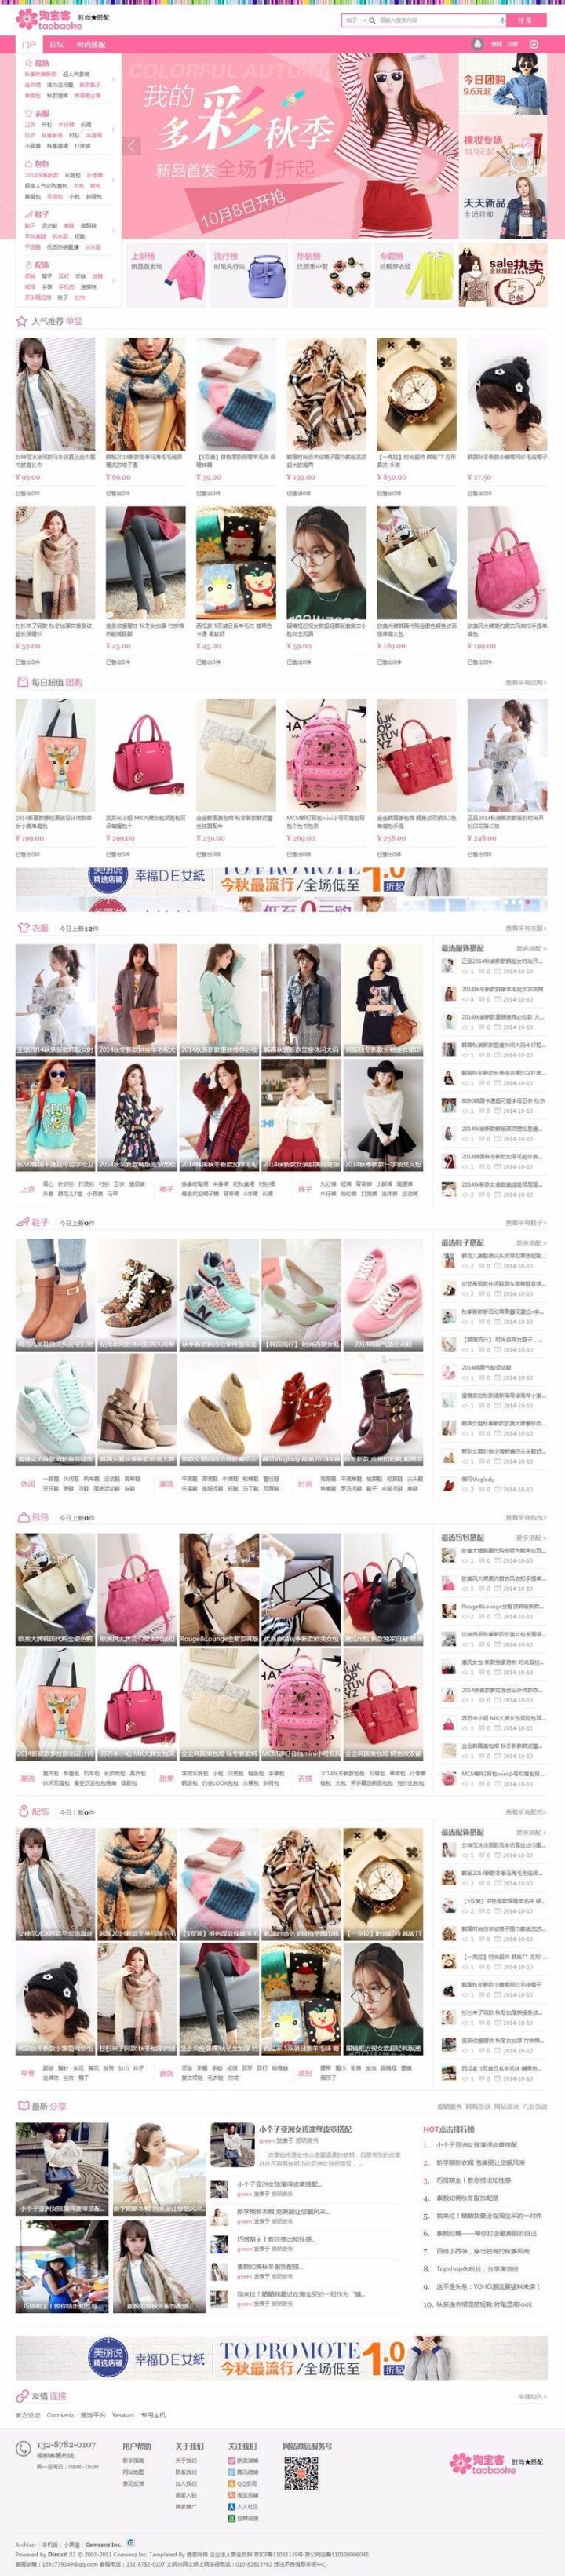 Discuz淘宝客网站模板/迪恩淘宝客购物风格商业版模板-微分享自媒体驿站